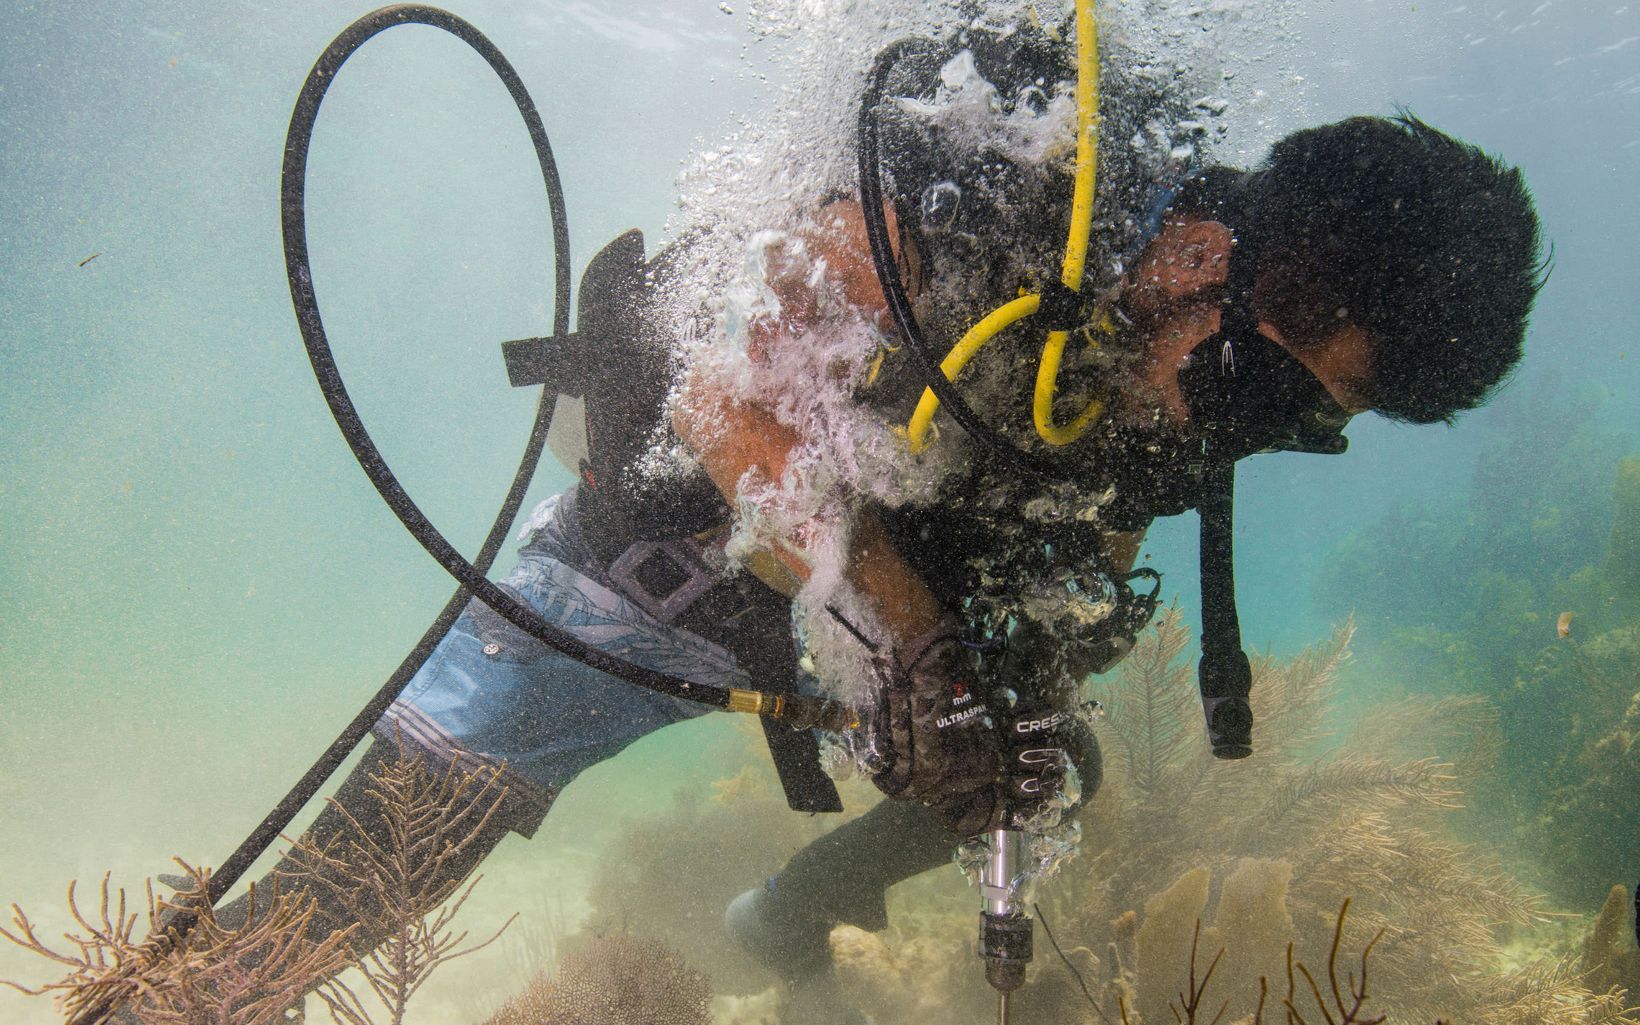 Reparaciones de corales Un buzo practica el uso de un taladro submarino como parte de un curso de reparación de arrecifes. En los orificios perforados, se colocarán soportes para volver a unir trozos de coral en el arrecife. © Jennifer Adler